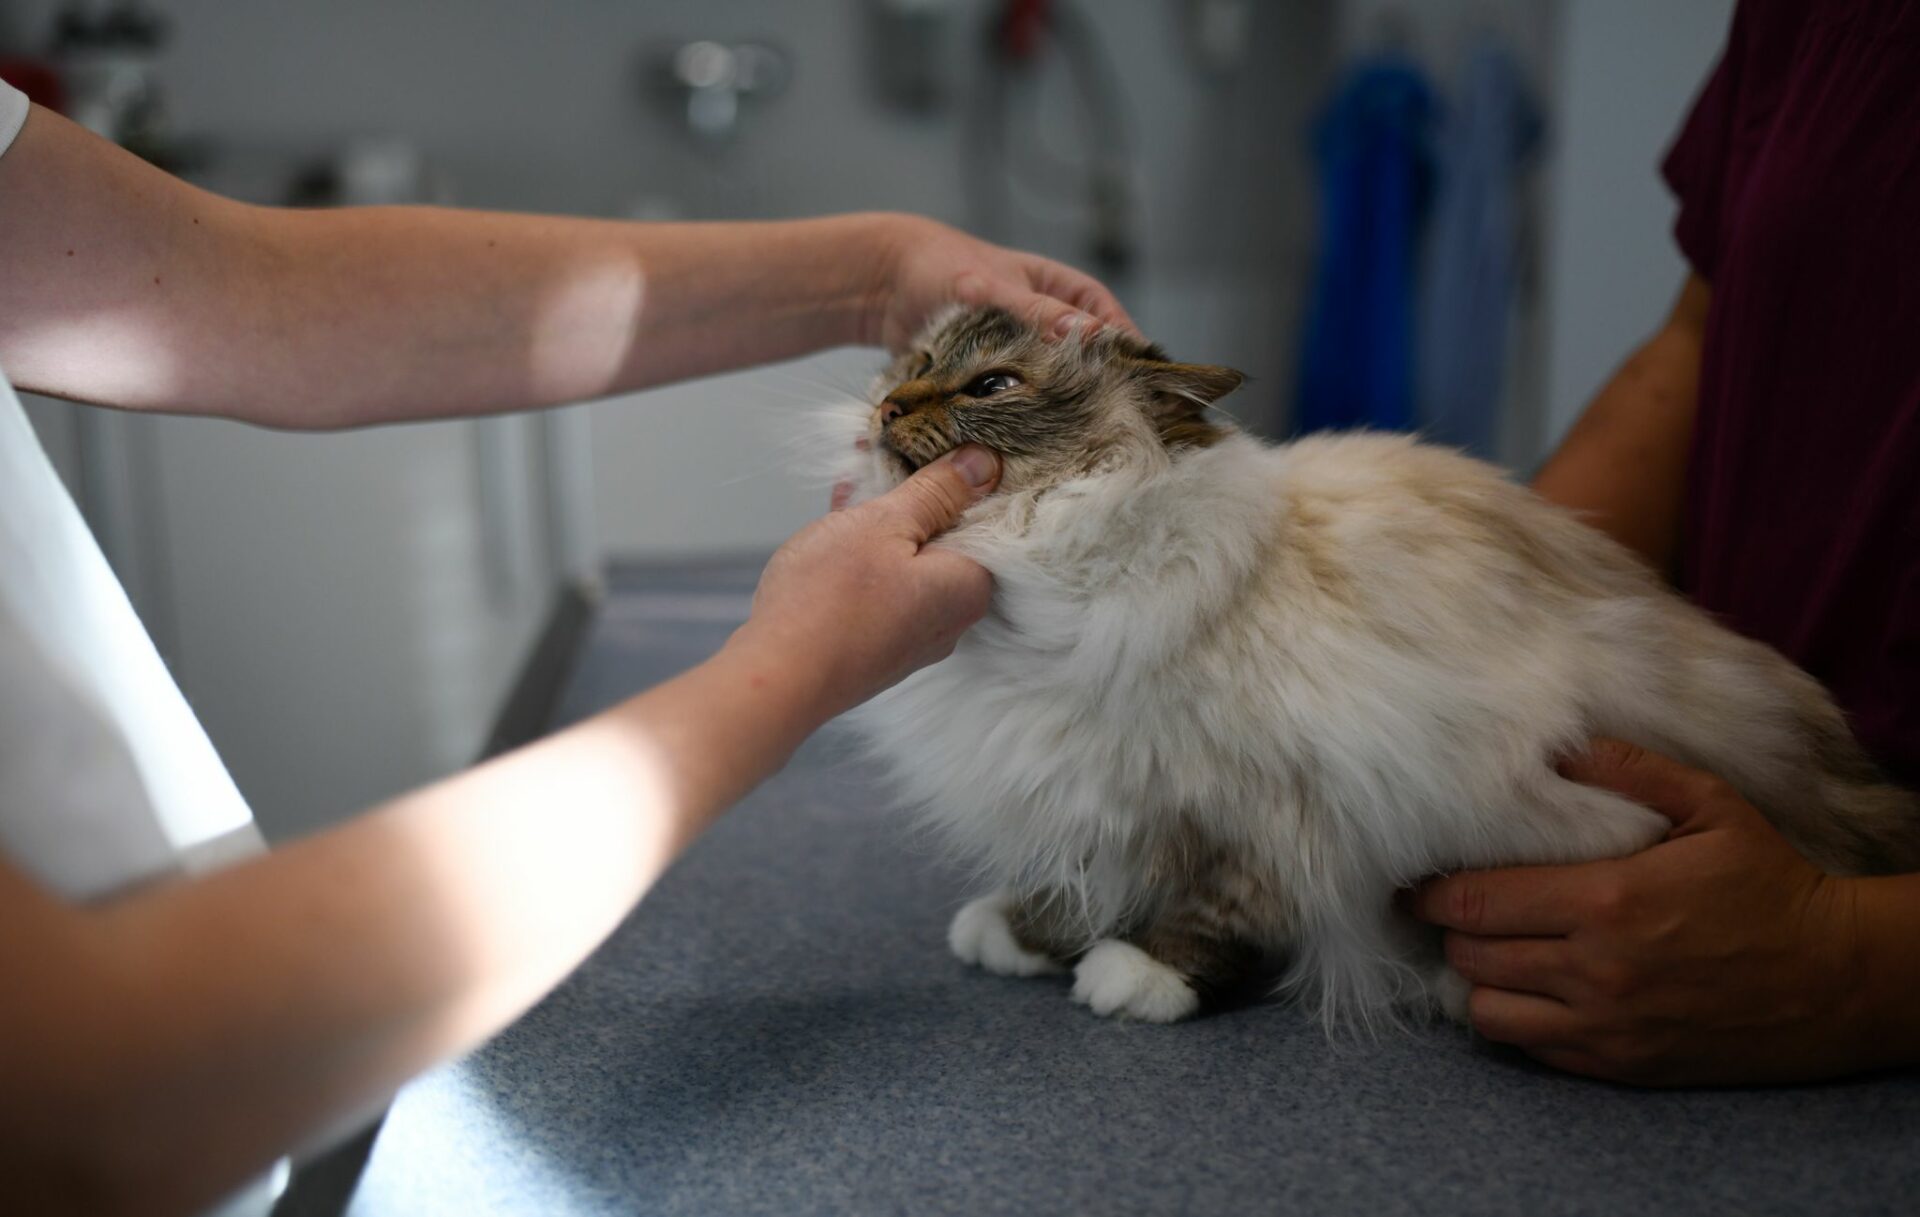 En los gatos, la diabetes puede producir consecuencias graves como ceguera, problemas de circulación, daño renal irreversible e incluso la muerte